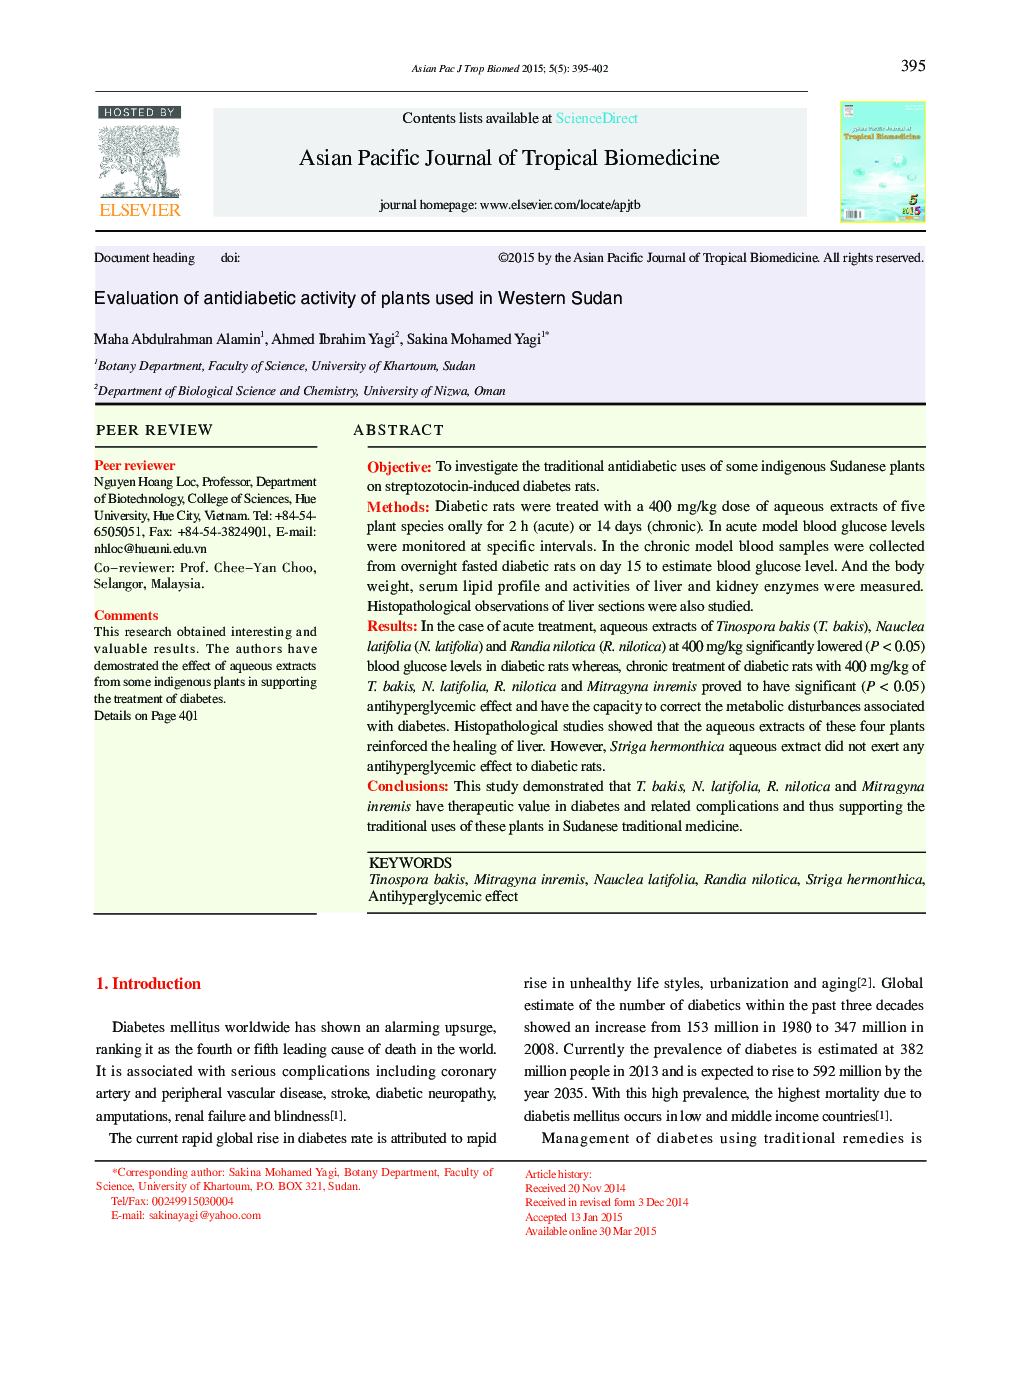 عنوان سند: ارزیابی فعالیت ضد دیابتی گیاهان مورد استفاده در سودان غربی 